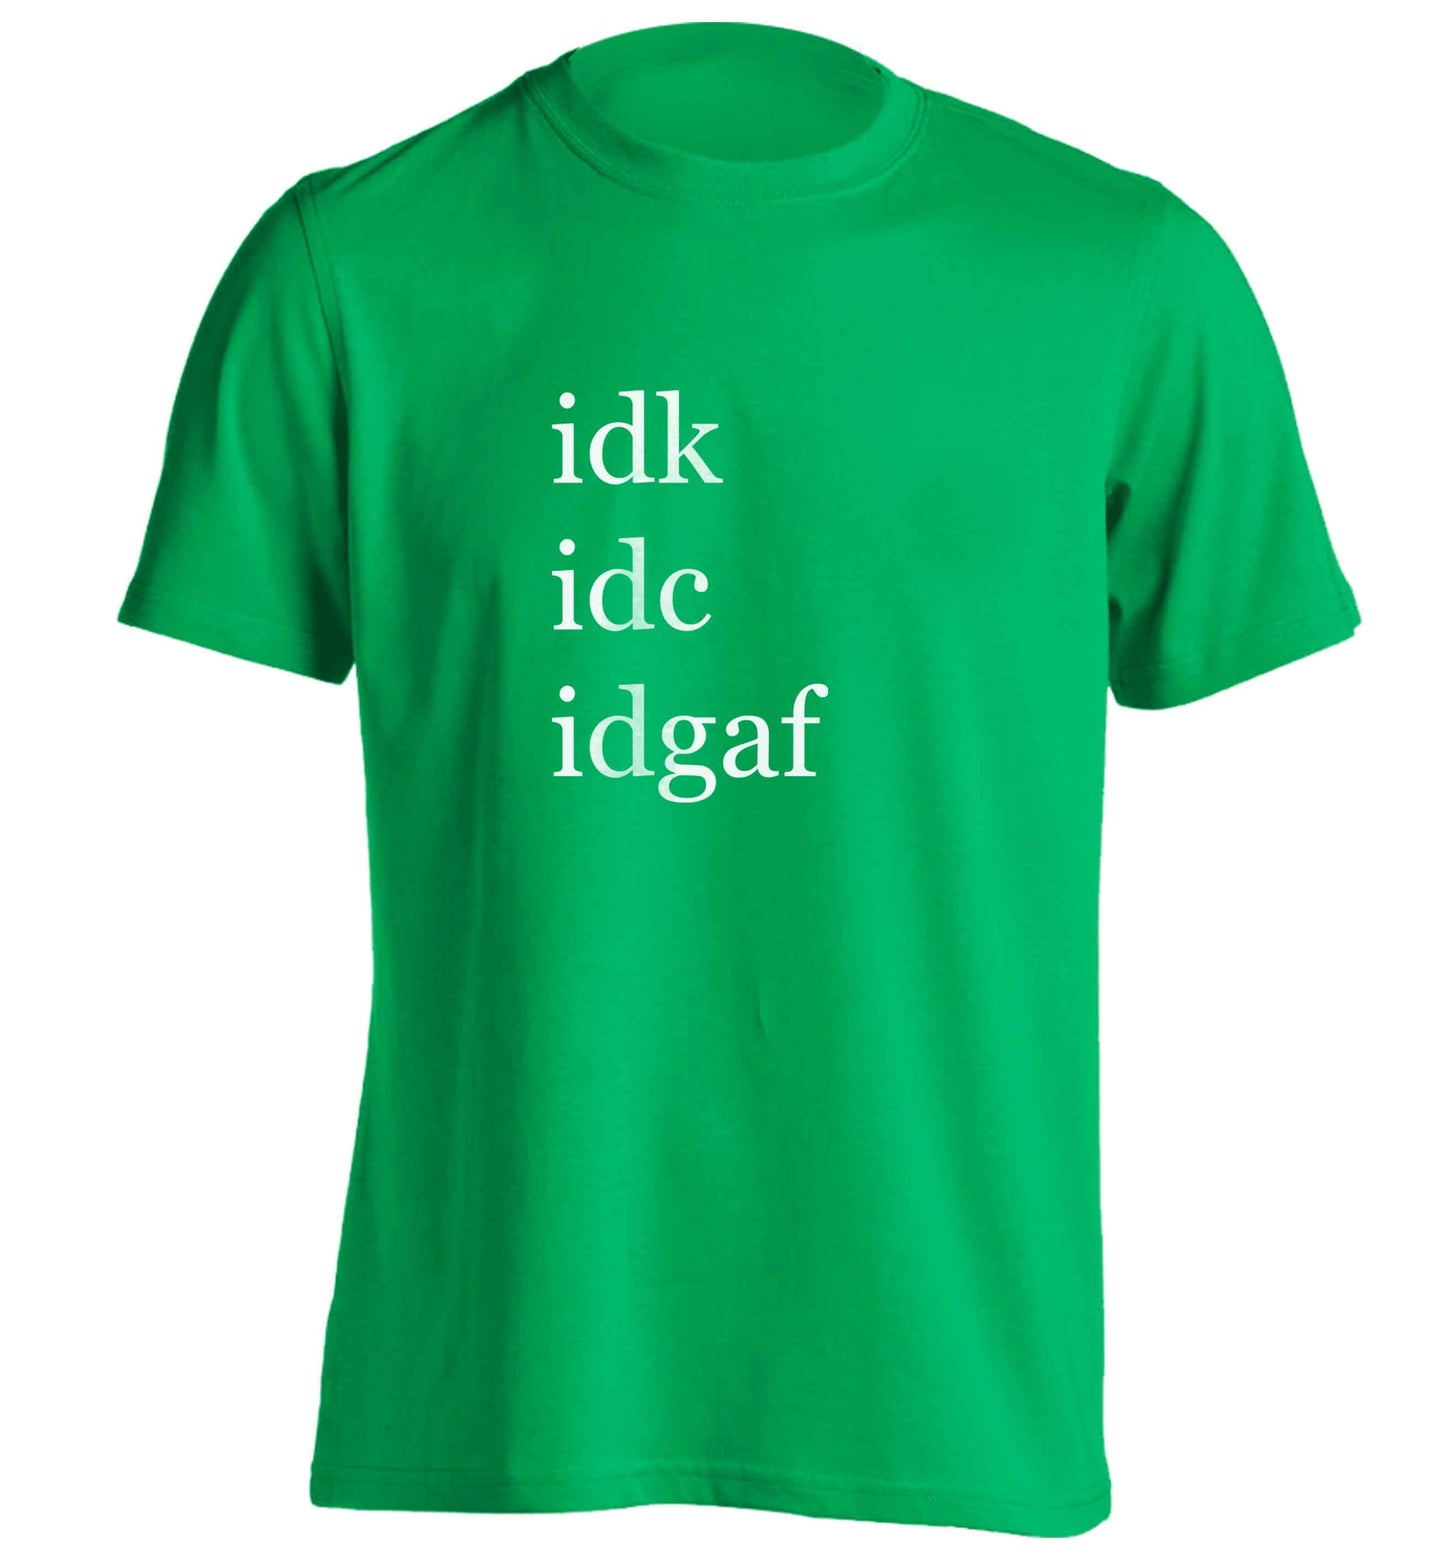 Idk Idc Idgaf adults unisex green Tshirt 2XL